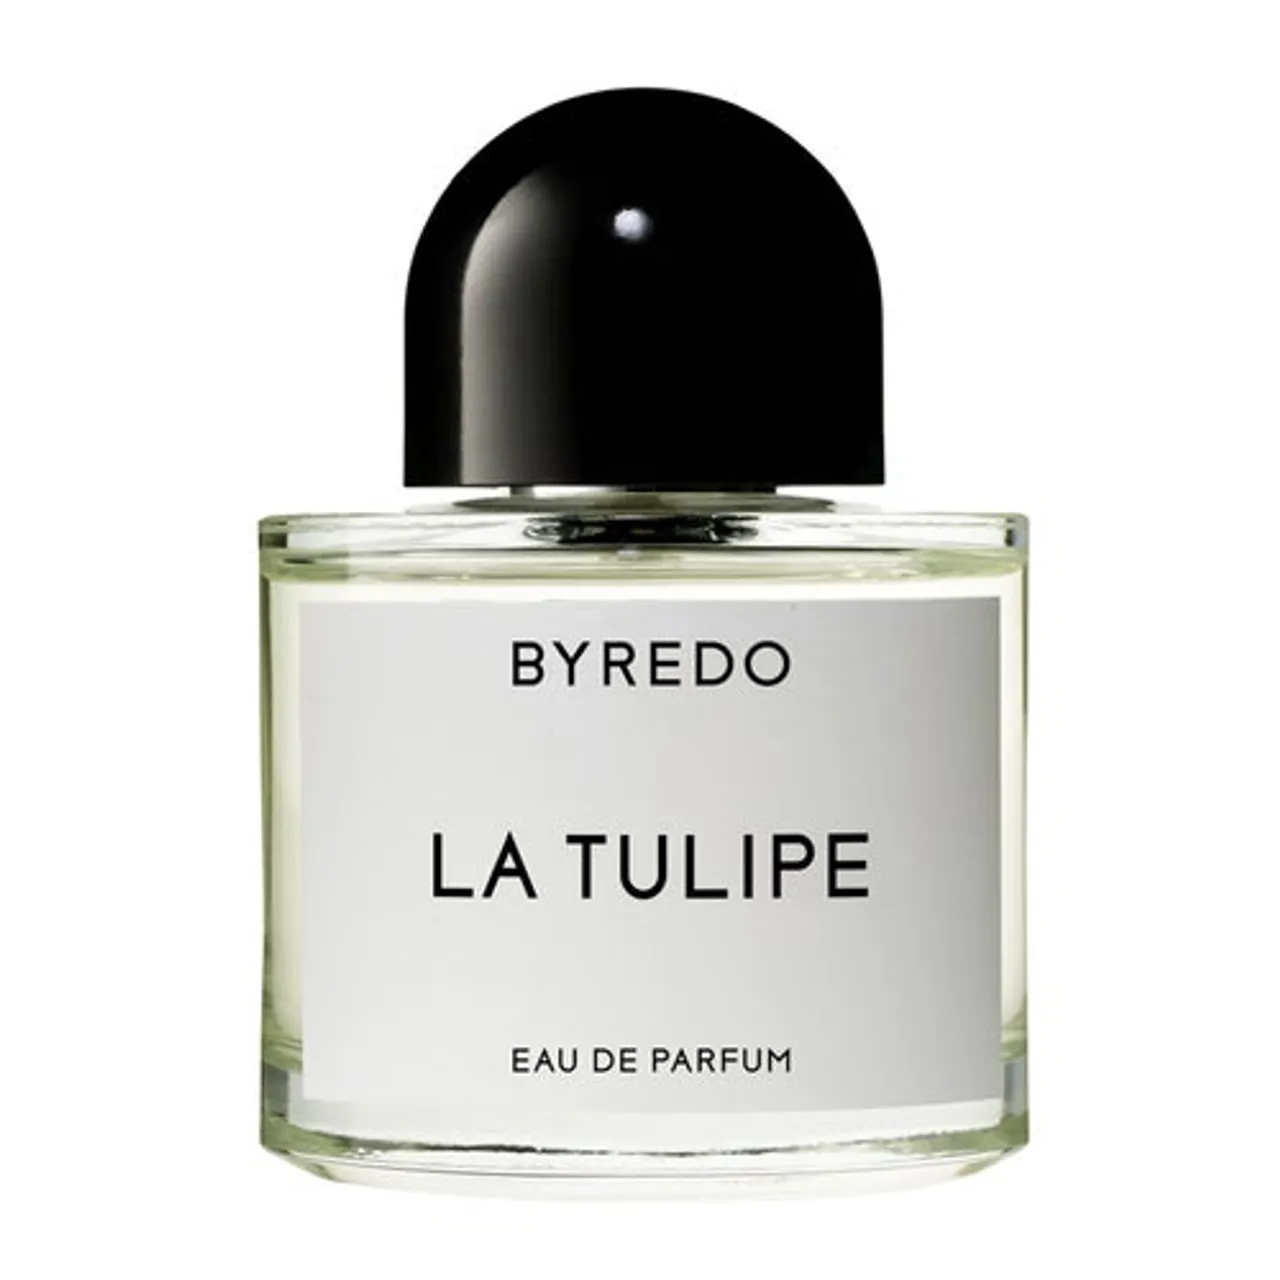 Byredo La Tulipe Eau de Parfum 50 ml